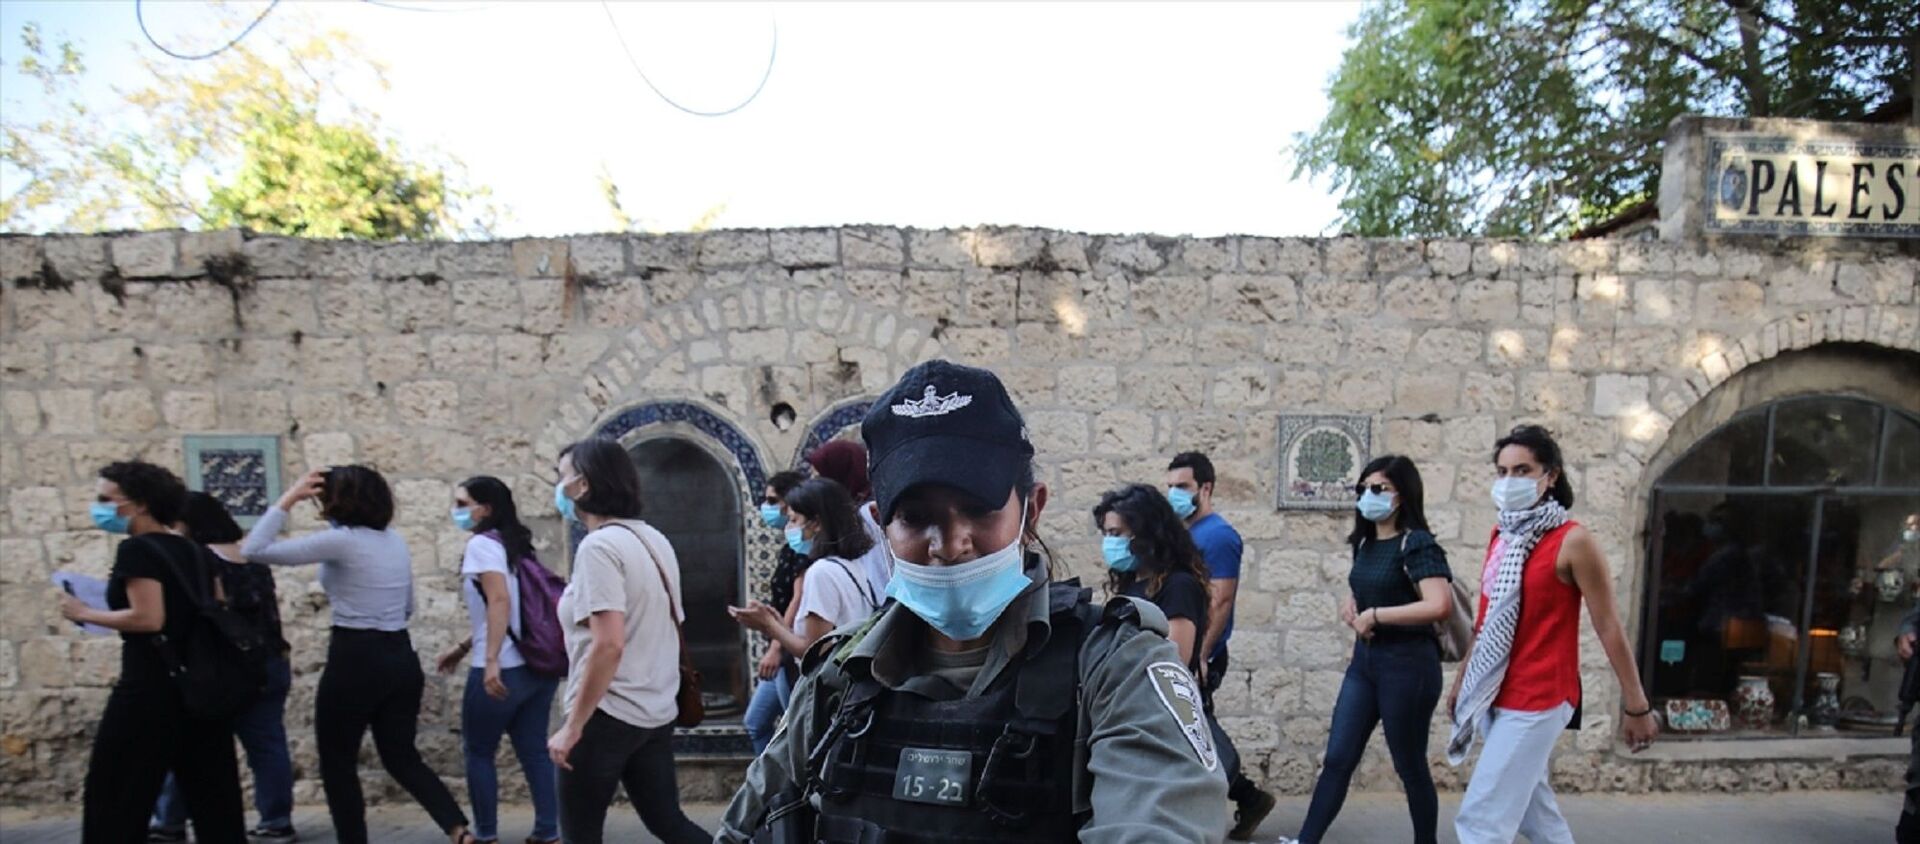 İsrail polisi, Doğu Kudüs’te otizmli İyad Hallak'ın öldürülmesine tepki amacıyla düzenlenen gösteriye müdahale ederek 3 Filistinli kadını gözaltına aldı. - Sputnik Türkiye, 1920, 17.04.2021